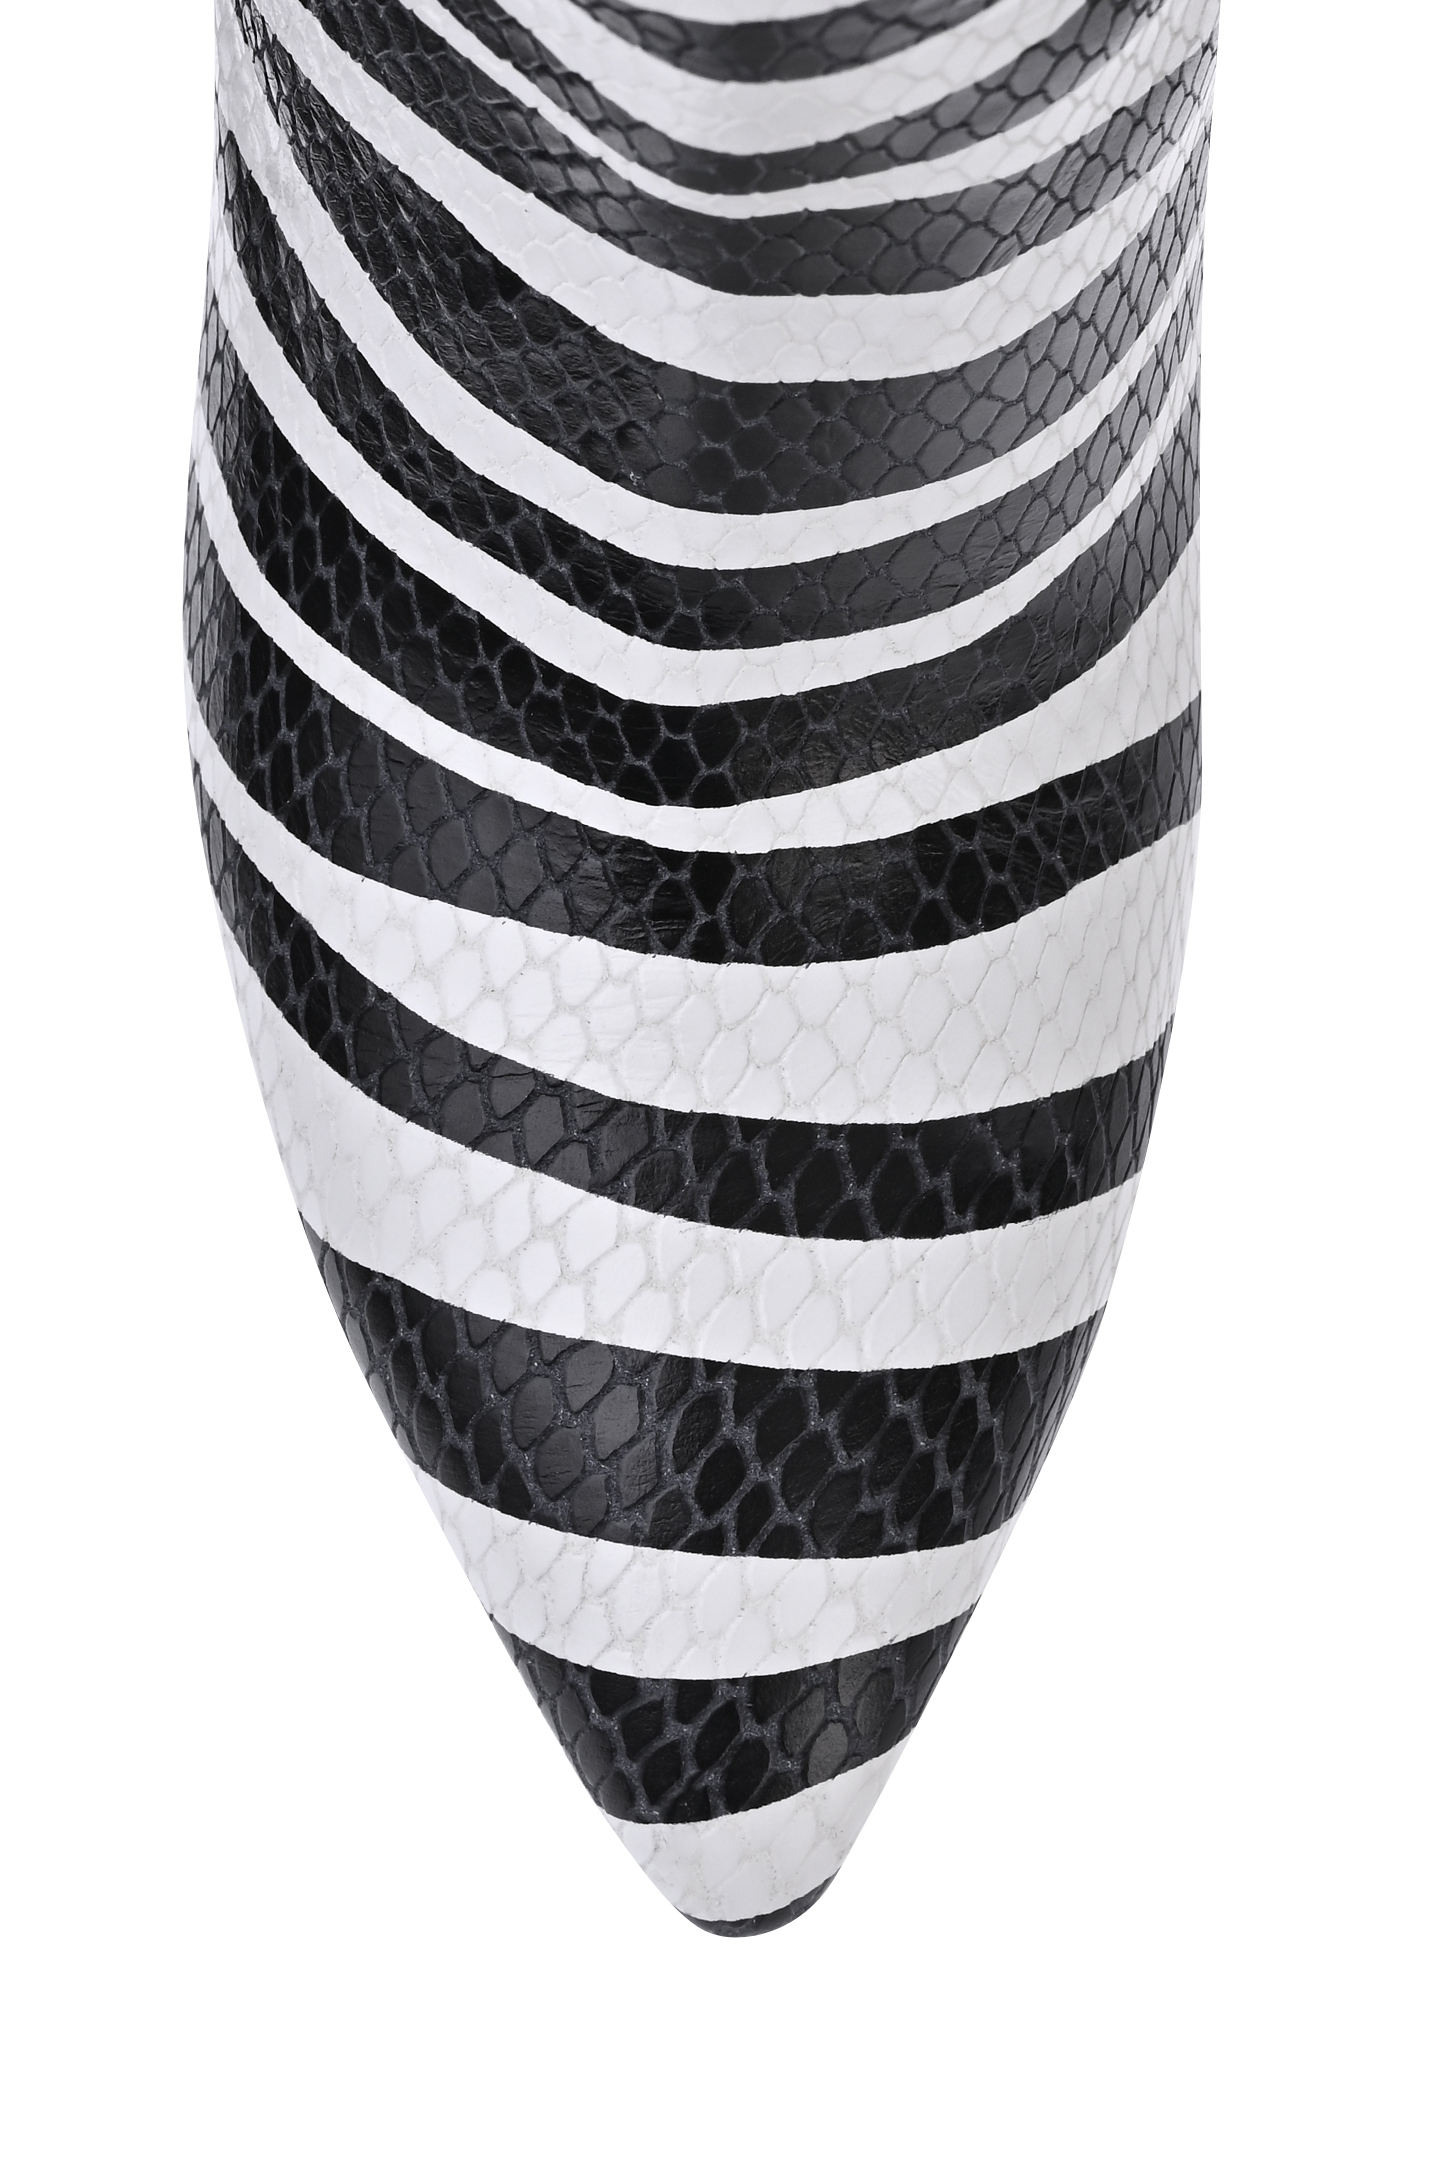 Сапоги PARIS TEXAS PX703 XPZSM, цвет: Черно-белый, Женский